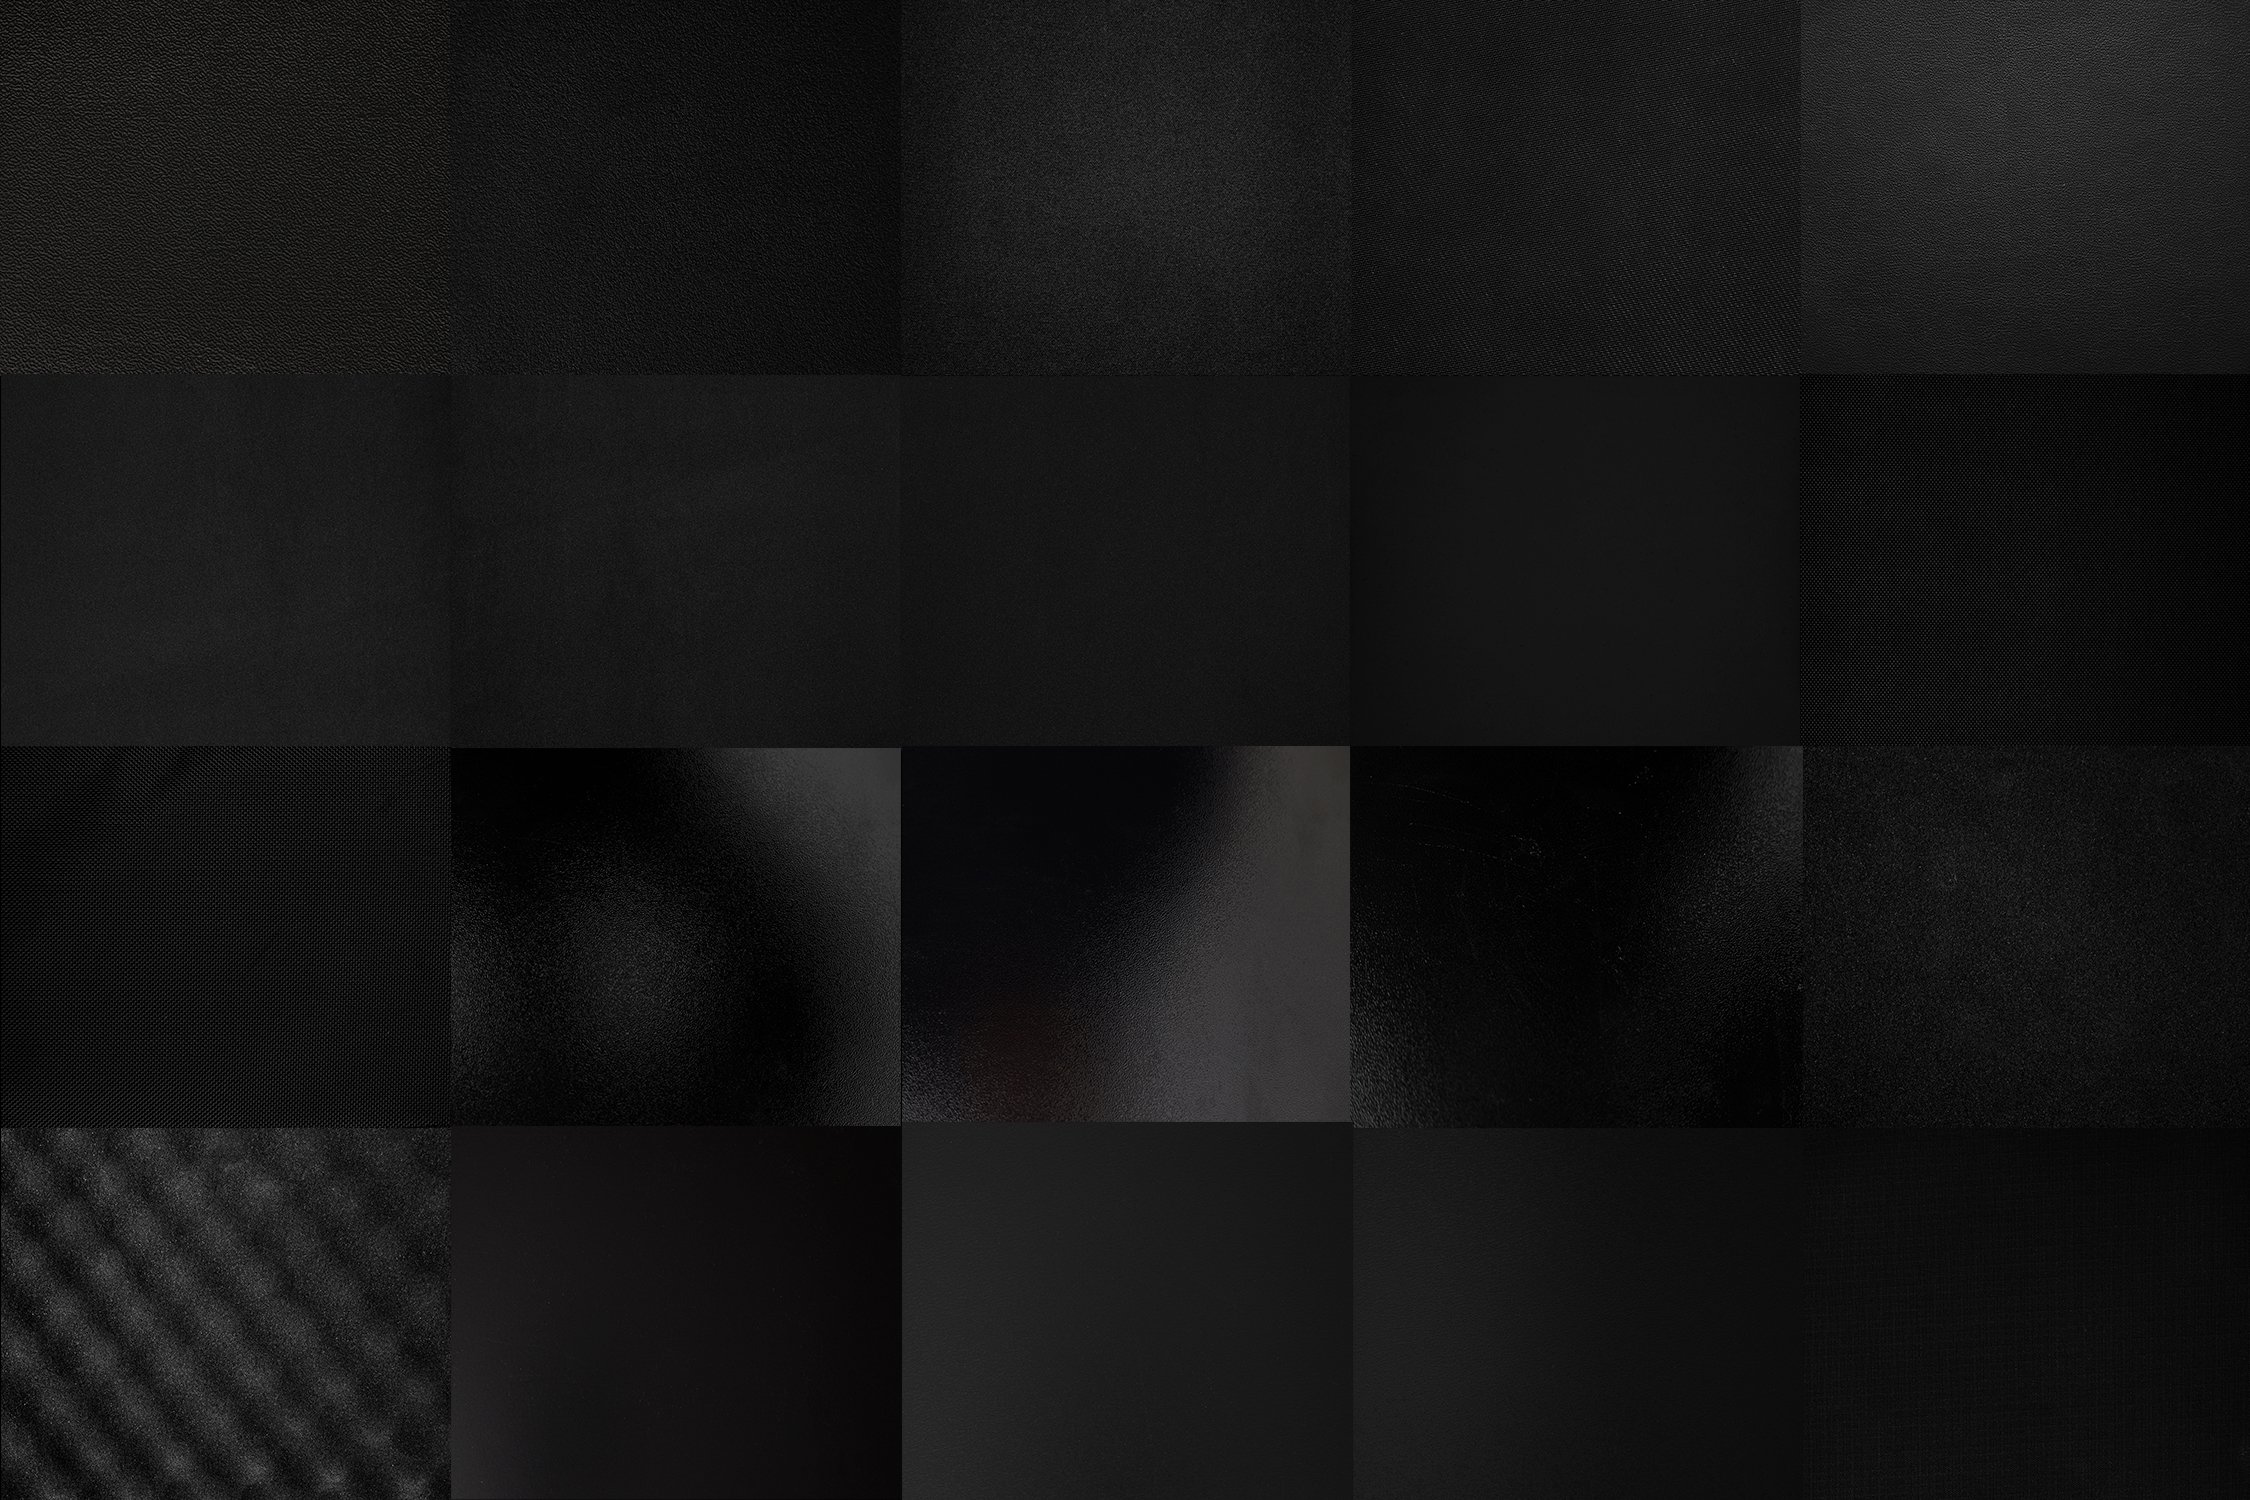 30 Black Textures Bundle HQ preview image.